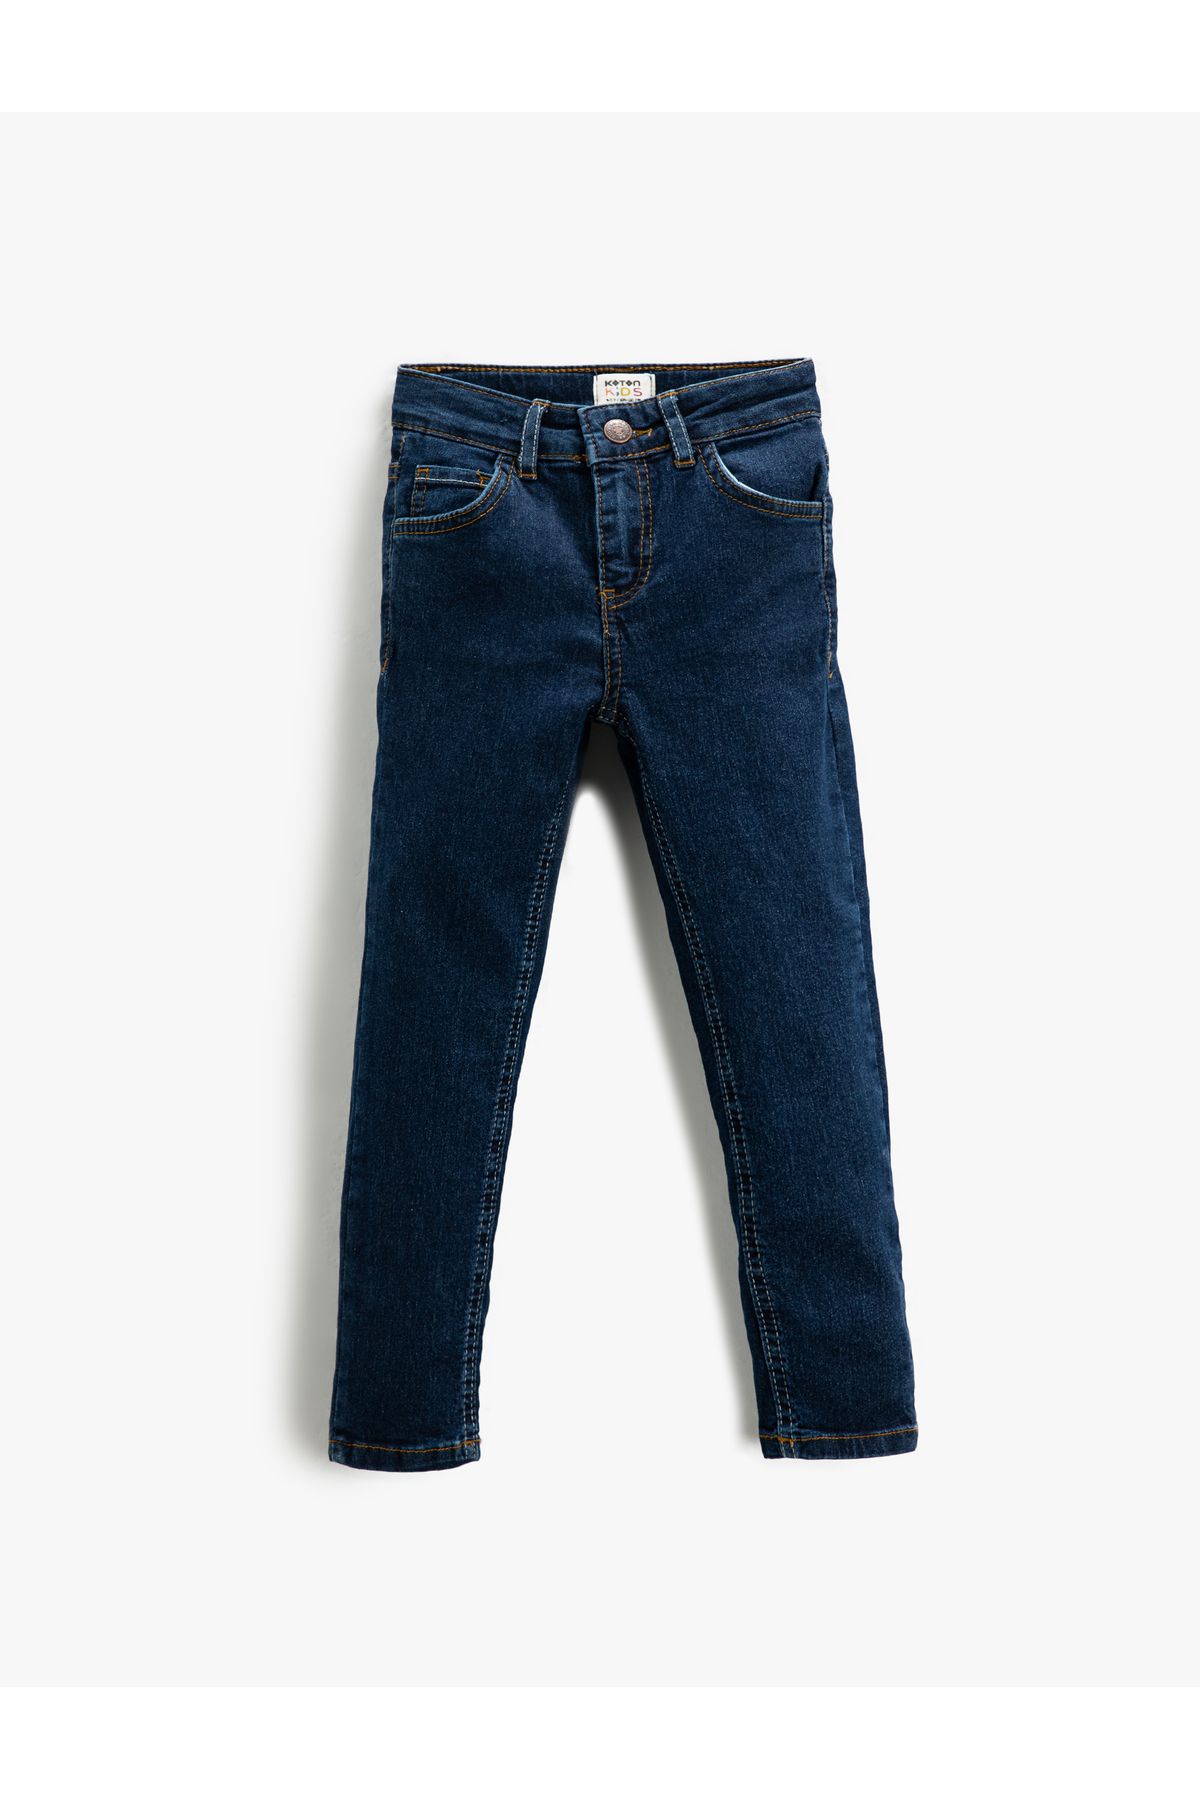 Koton شلوار جین تنگ - با کمر الاستیک قابل تنظیم